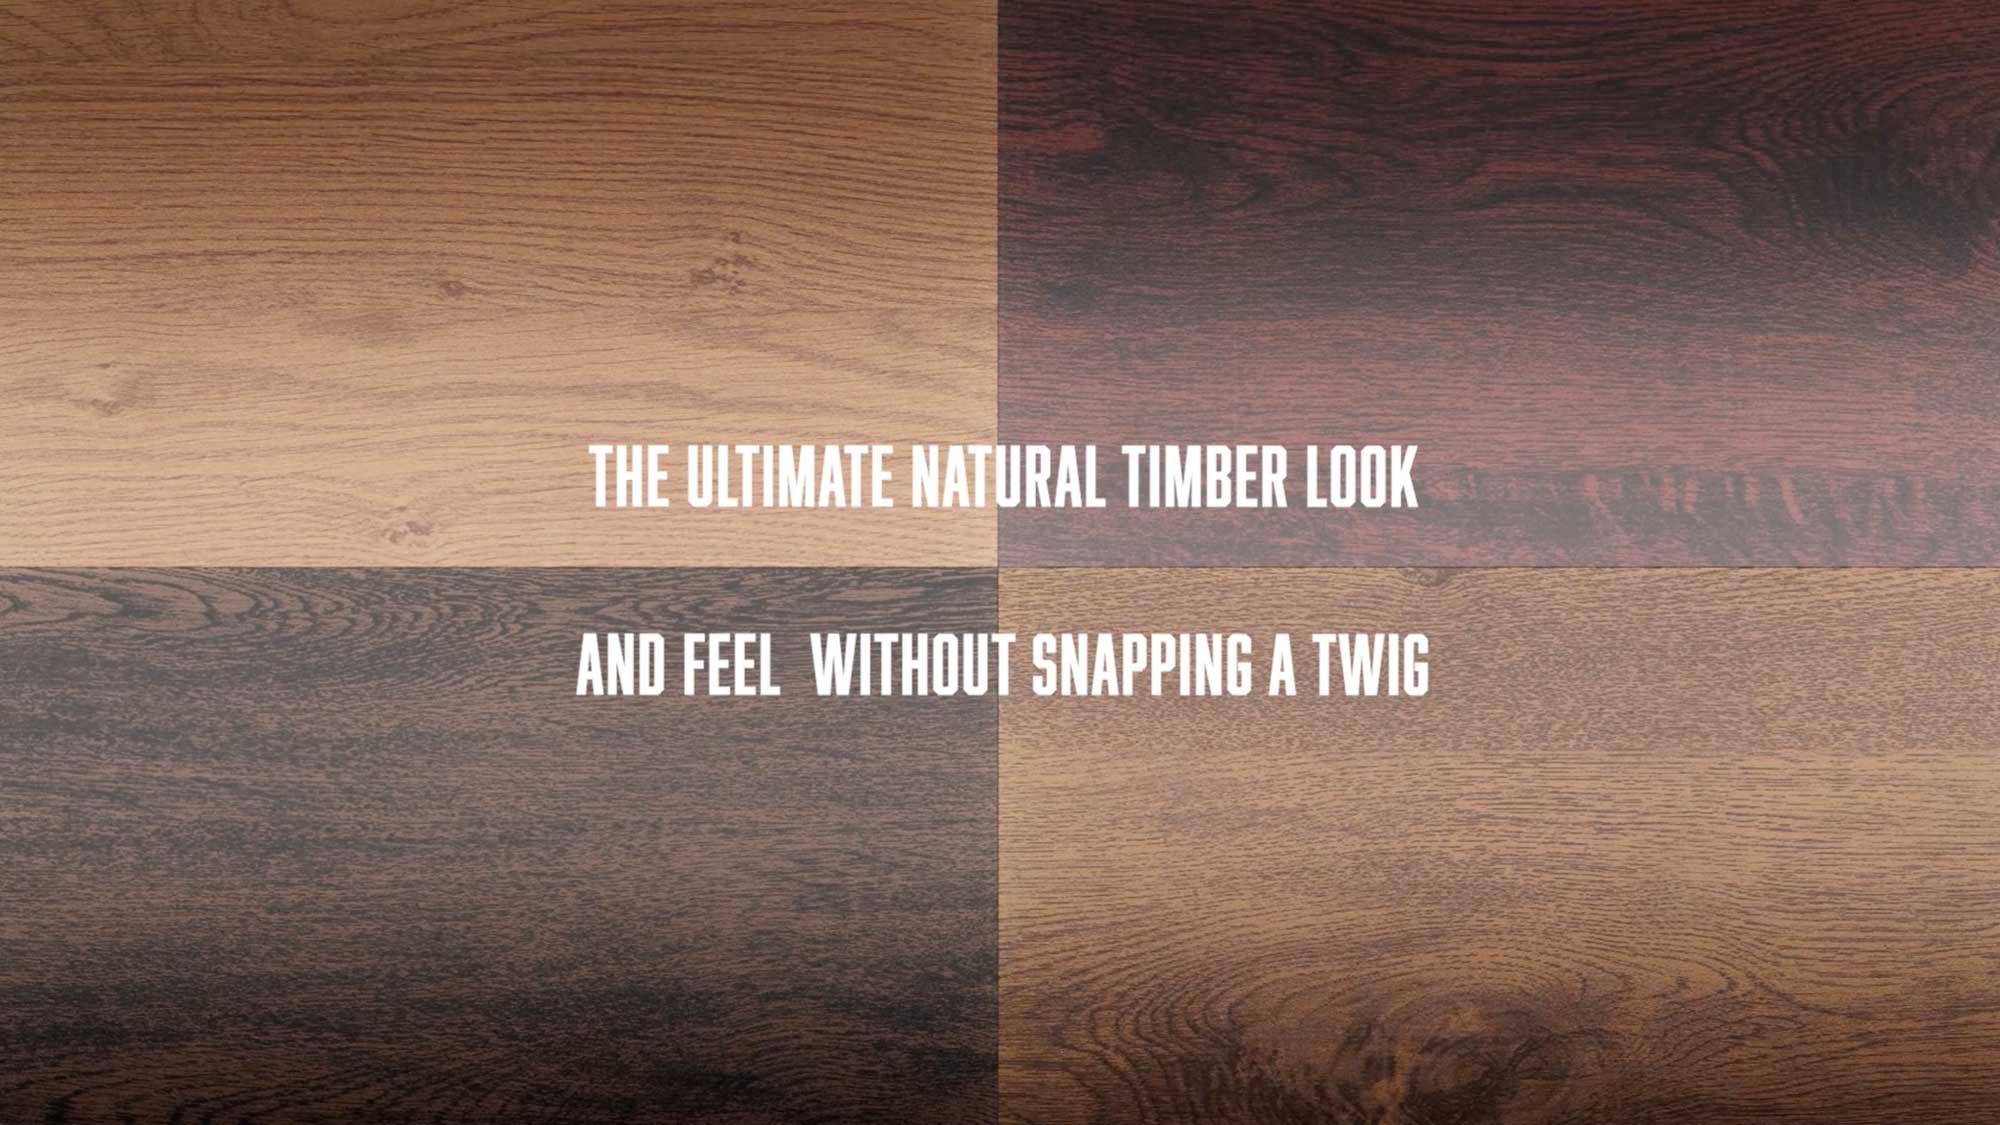 I prodotti Wood Décor della linea VarHD+ di Varcolor riproducono le finiture e sfumature tipiche del legno su acciaio zincato ed alluminio.